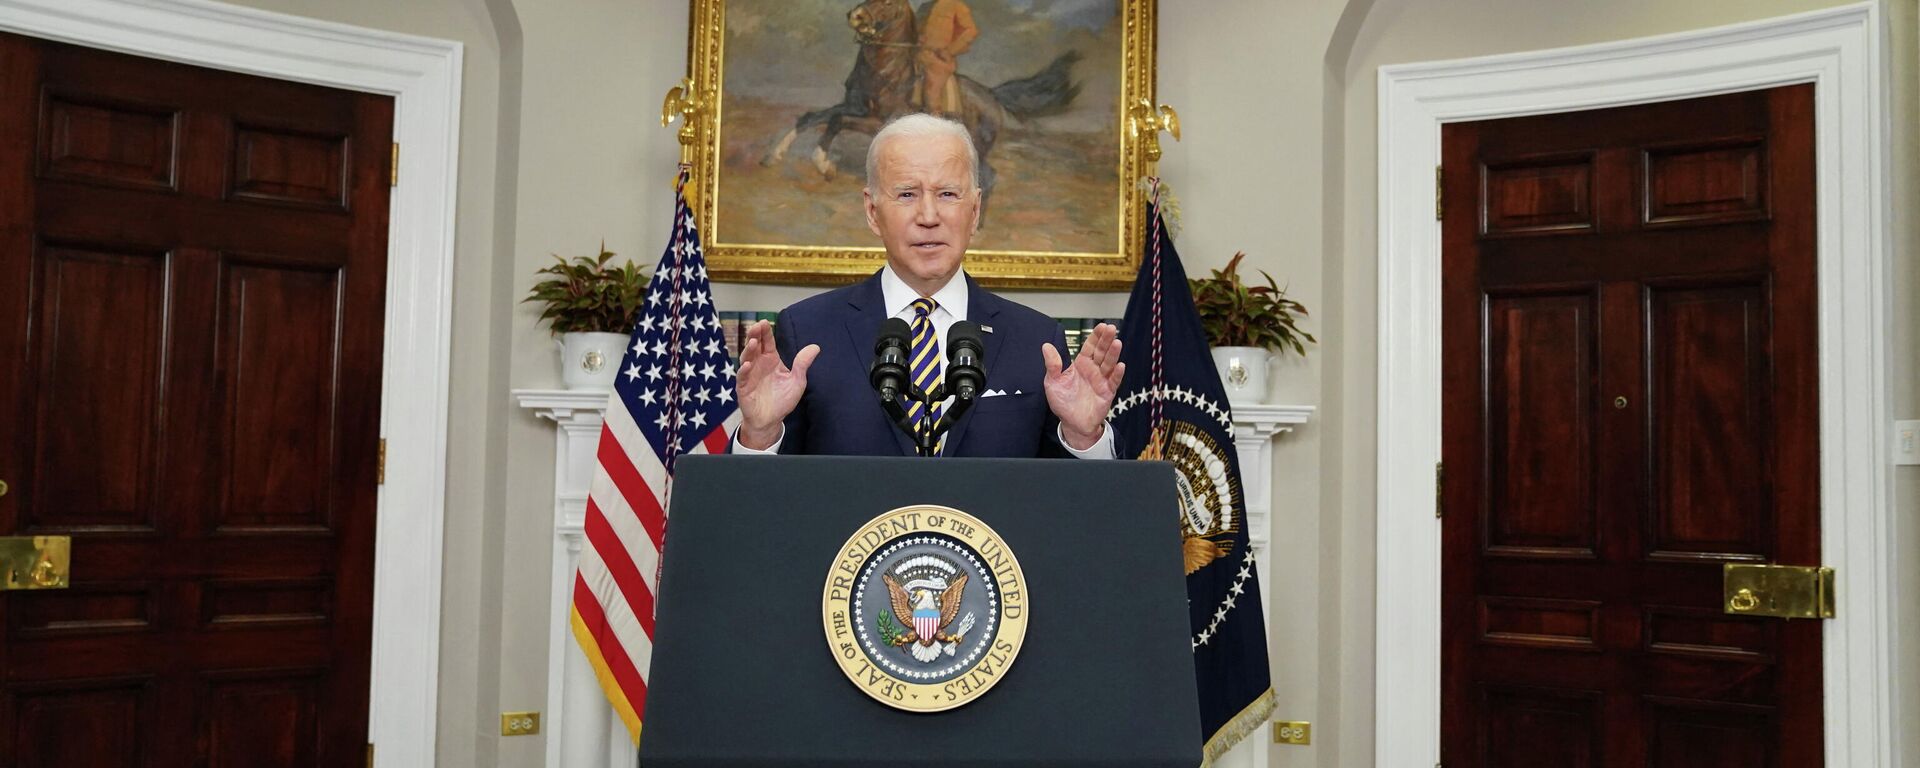 O presidente dos EUA, Joe Biden, anuncia sanções contra a Rússia durante discurso na Casa Branca, em Washington, em 8 de março de 2022. - Sputnik Brasil, 1920, 08.03.2022